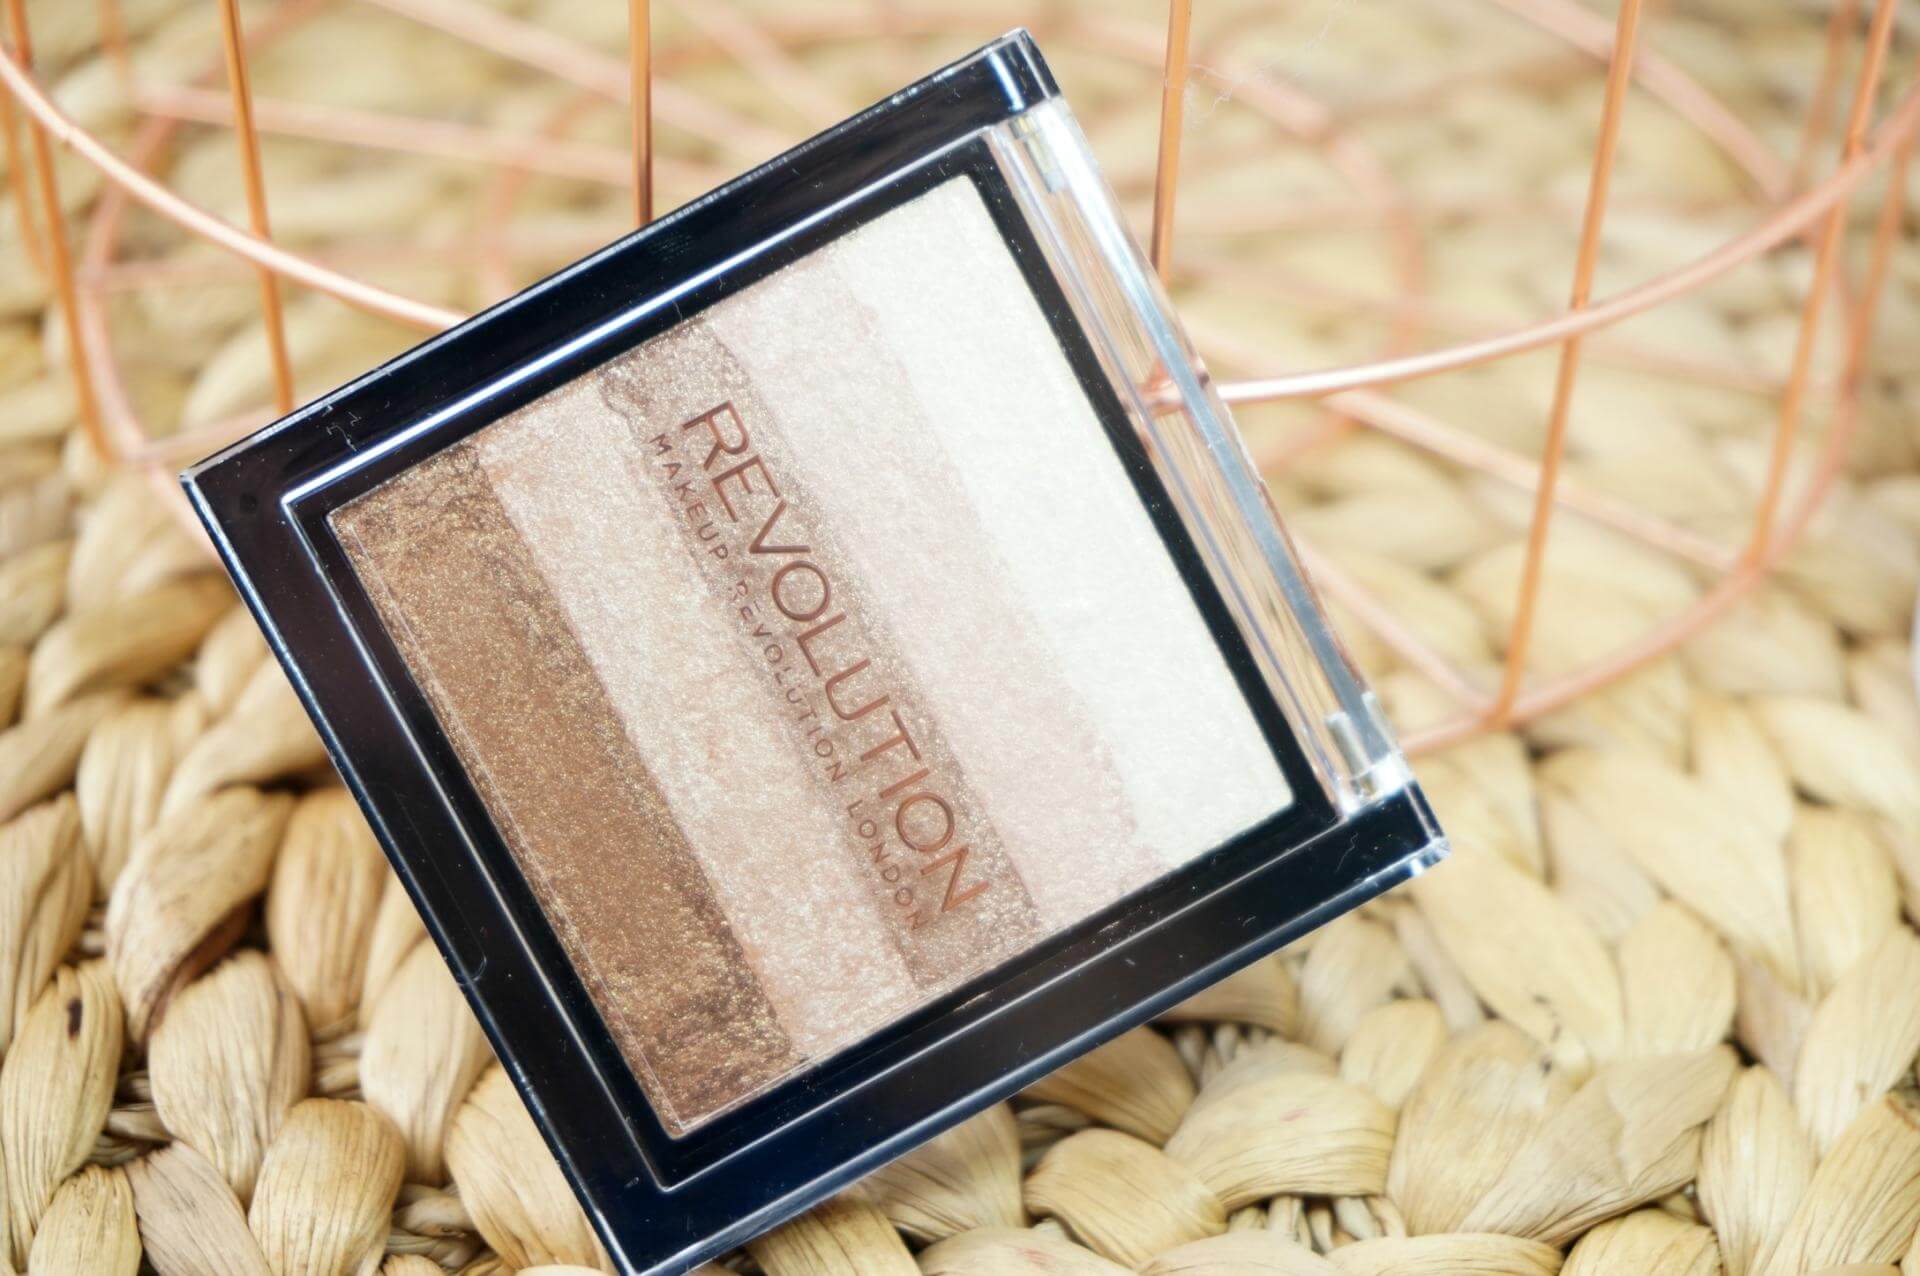 Makeup Revolution Vivid Shimmer Brick